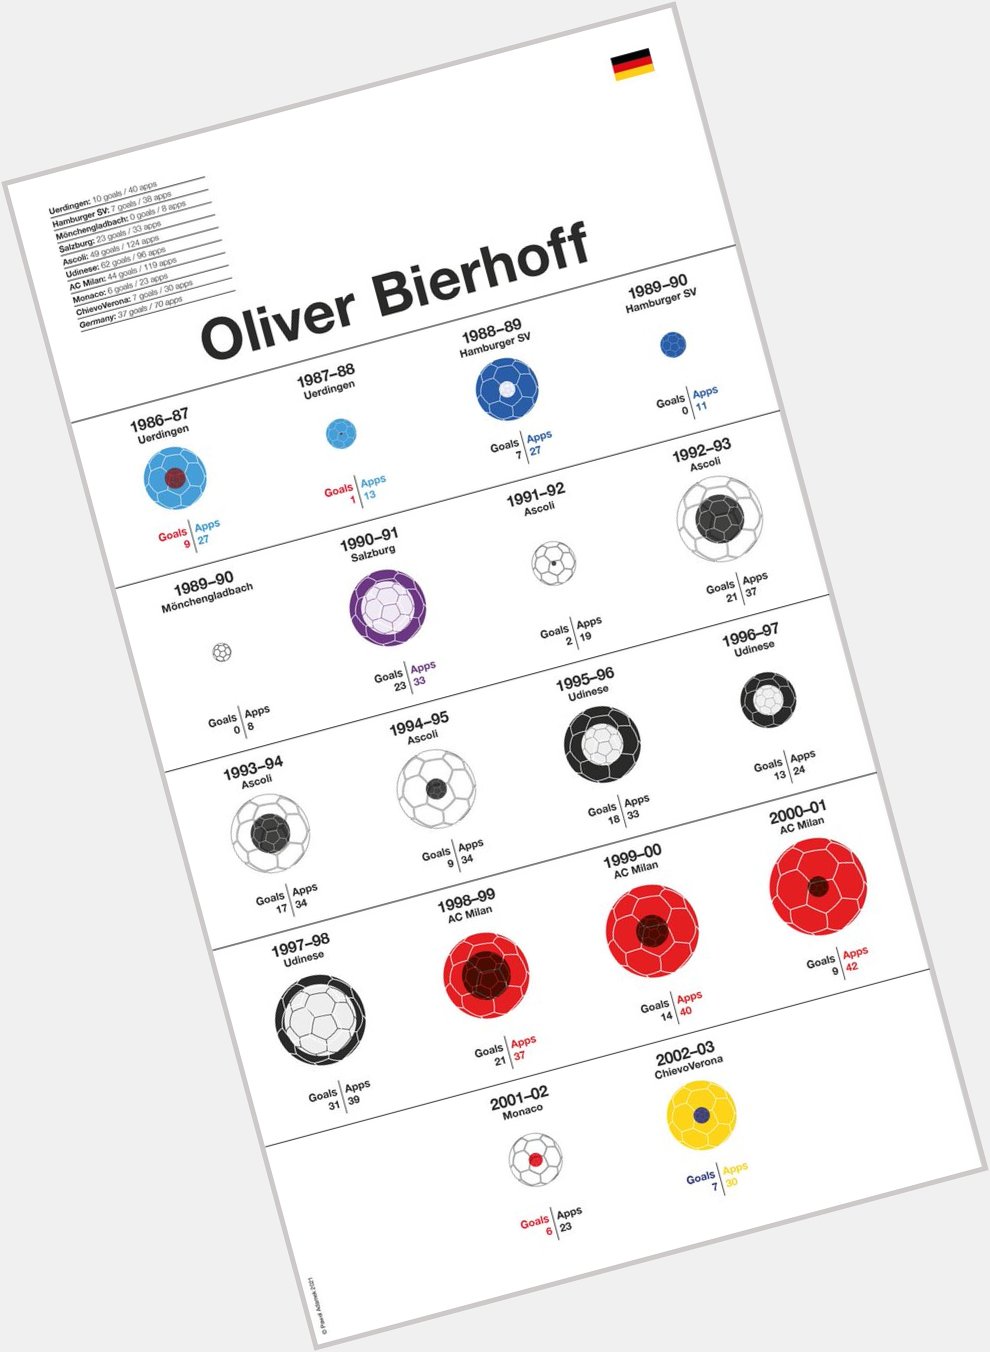 Happy Birthday Oliver Bierhoff!        